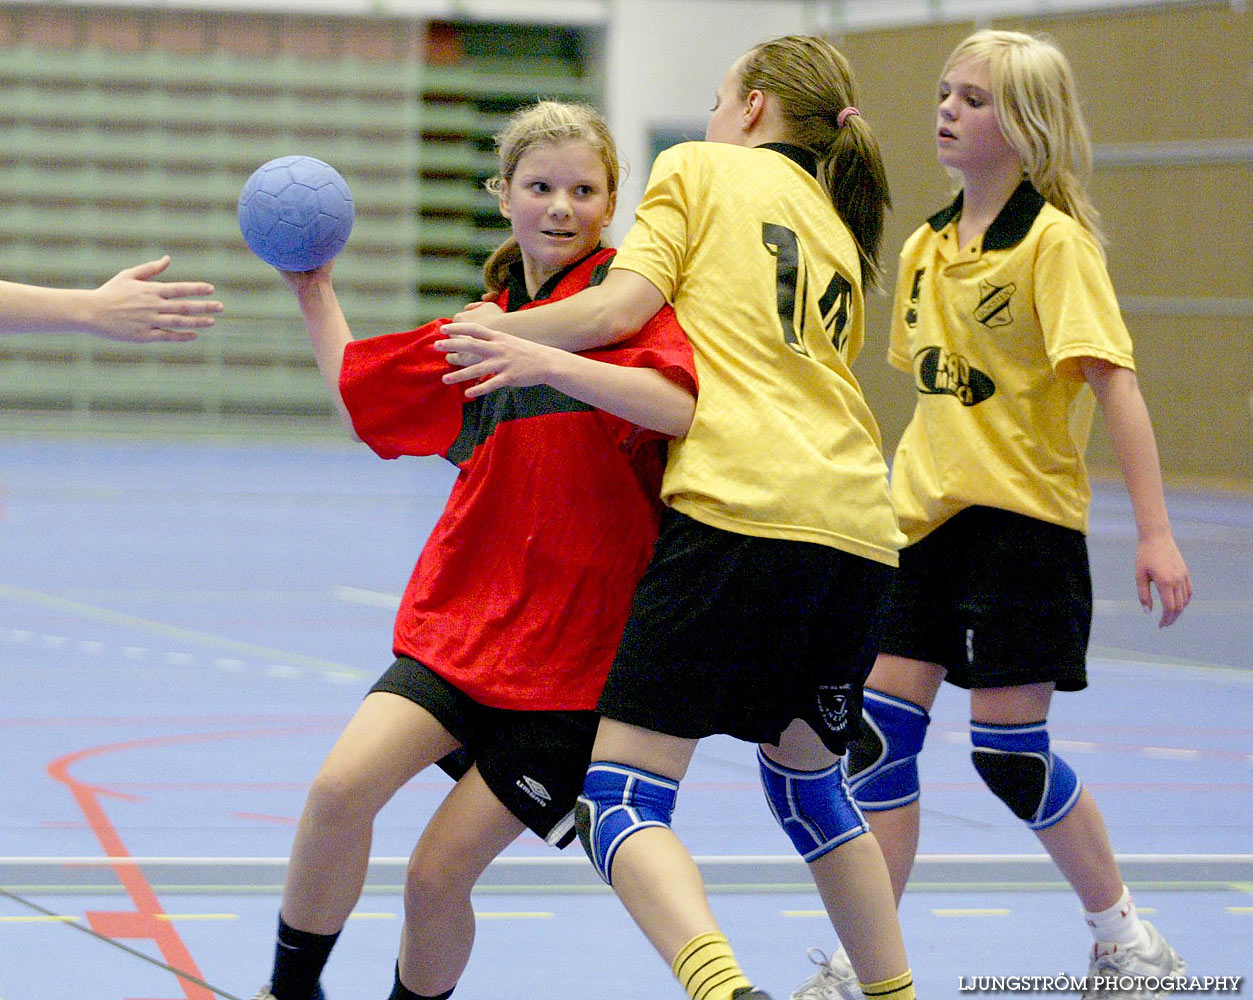 Skadevi Handbollscup 2005 Fredag,mix,Arena Skövde,Skövde,Sverige,Handboll,,2005,141379